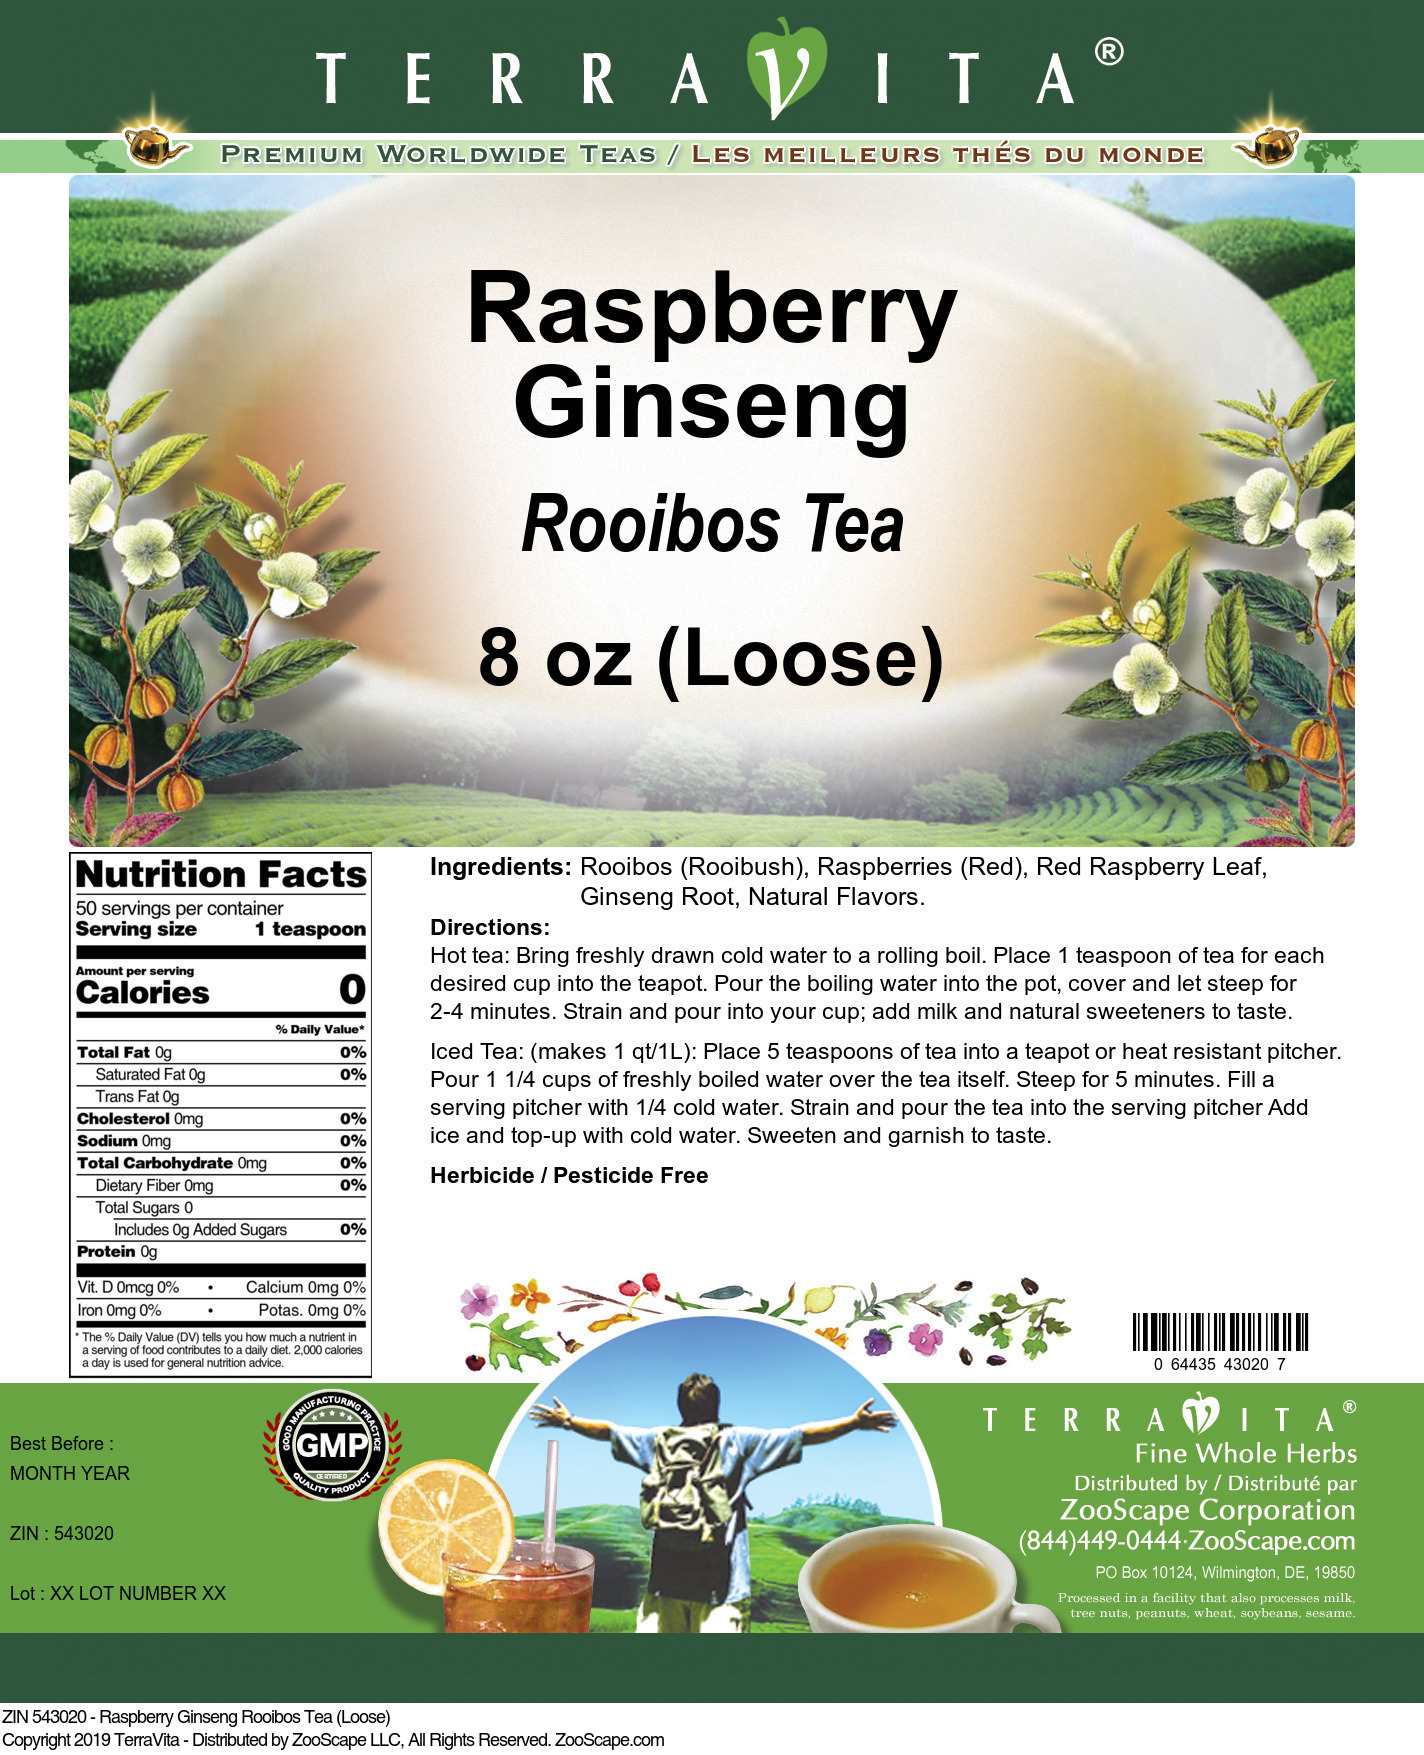 Raspberry Ginseng Rooibos Tea (Loose) - Label